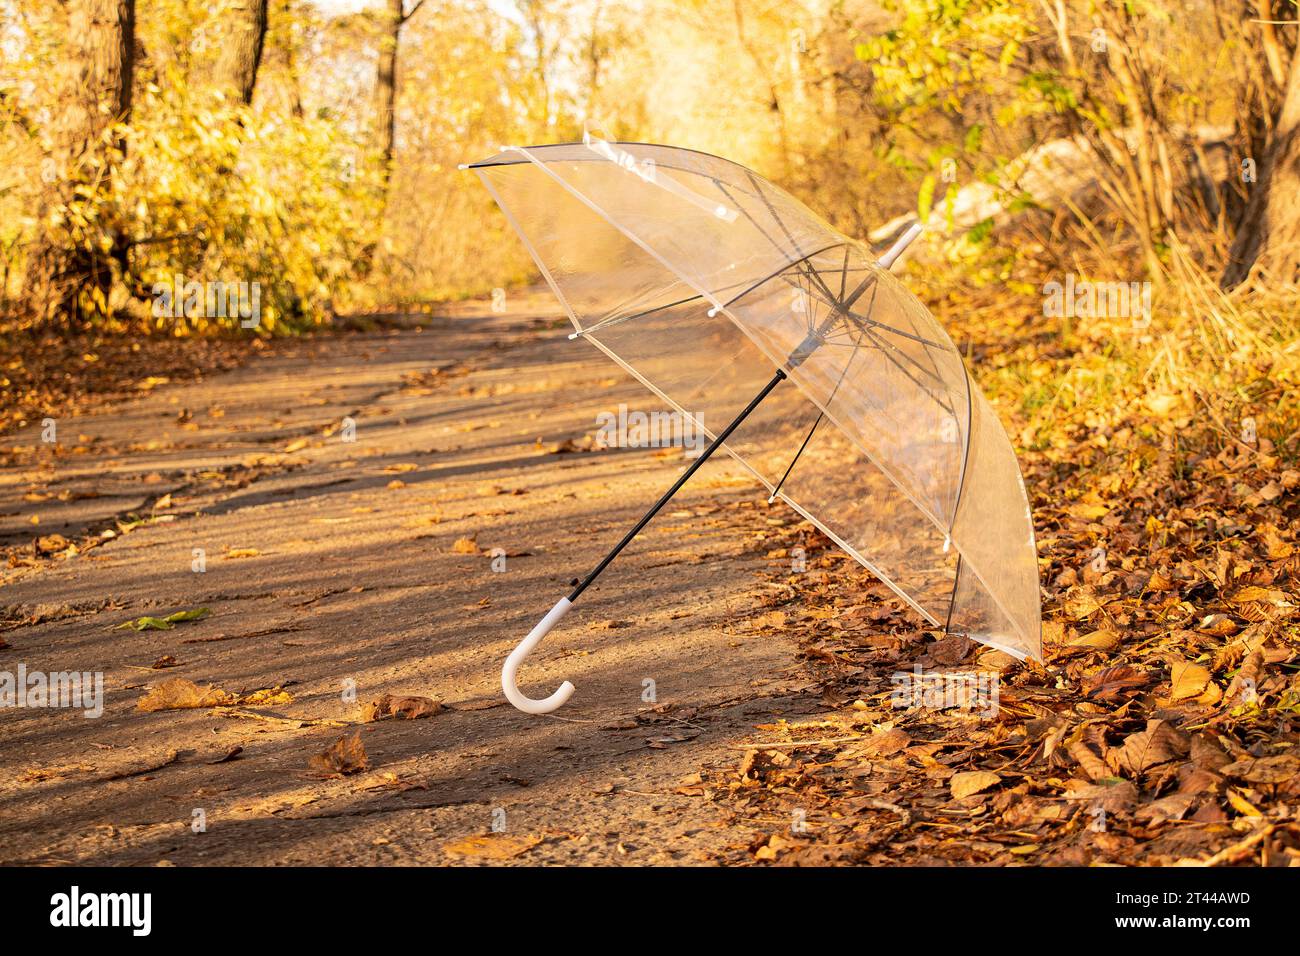 Ein transparenter Schirm liegt auf der Straße im Wald in der Herbstsonne, Herbstwetter, Jahreszeit, gelben Blättern Stockfoto